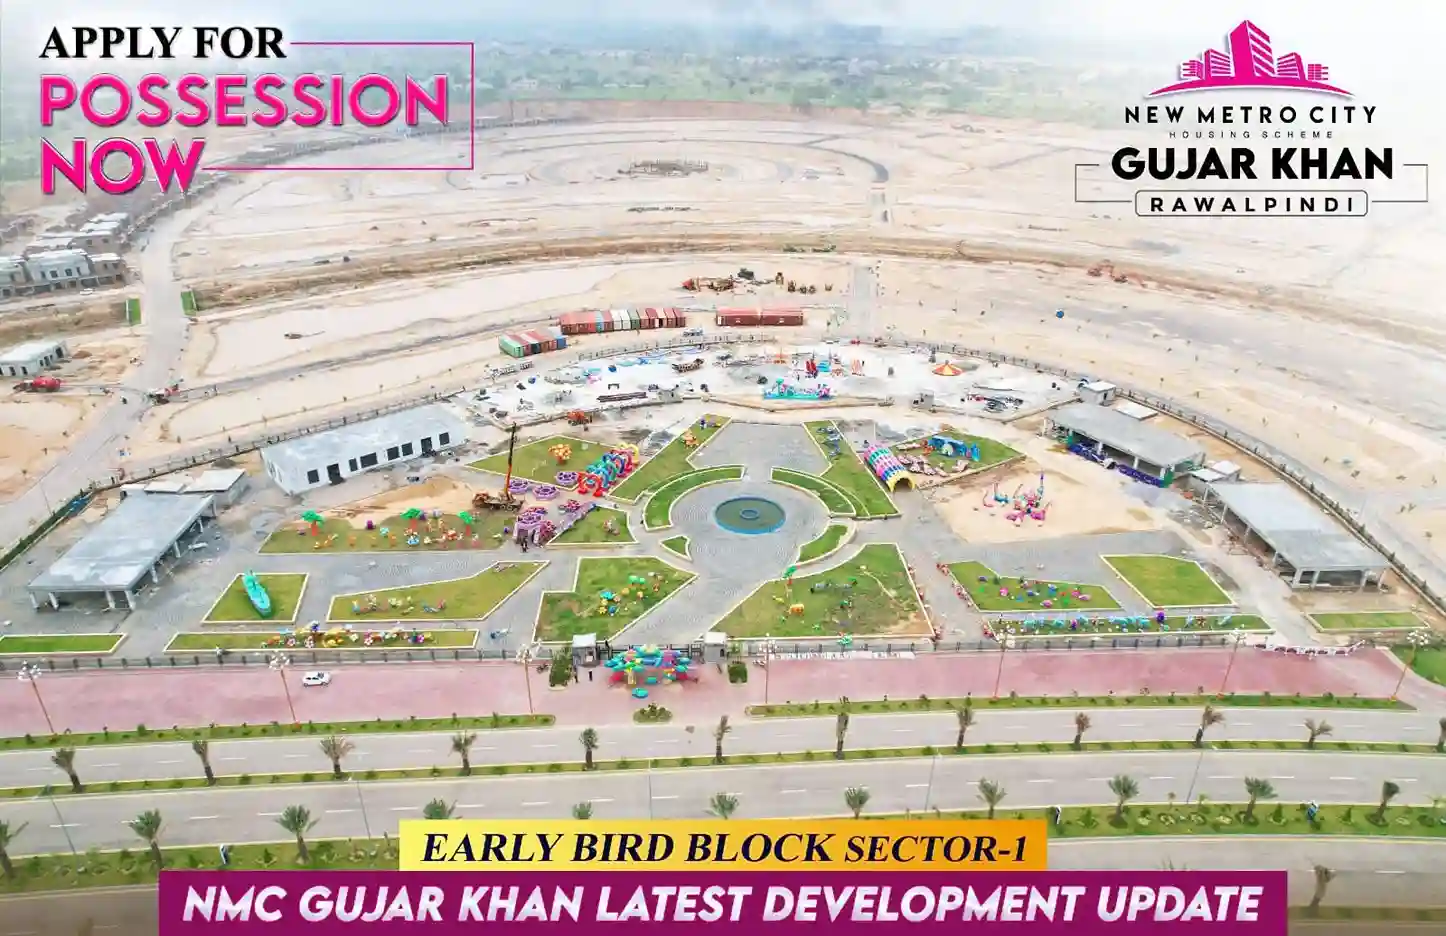 New Metro City Gujar Khan Rawalpindi development work